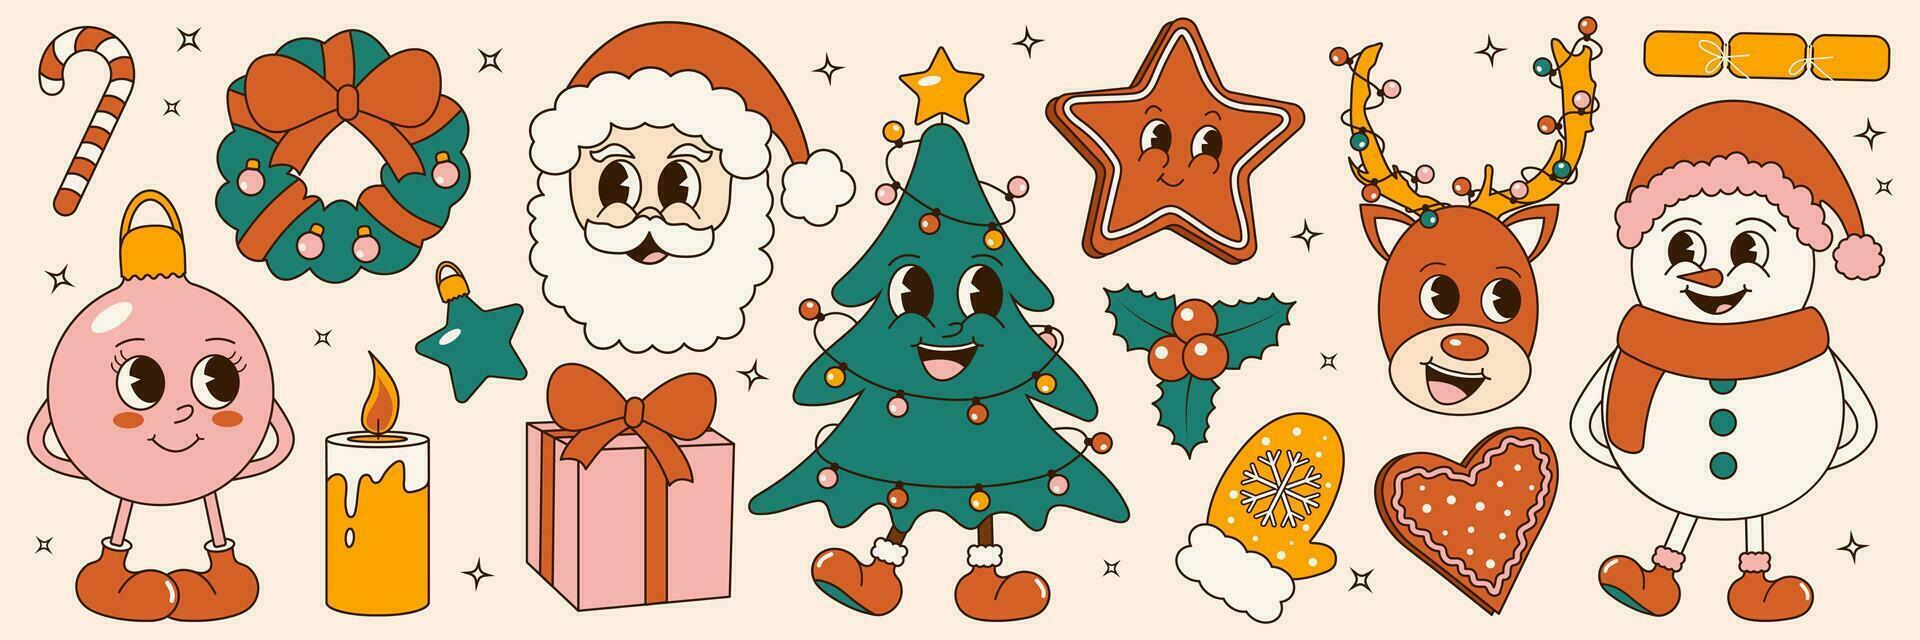 maravilloso 70s Navidad pegatina colocar. de moda retro dibujos animados estilo. cómic dibujos animados caracteres y elementos. Navidad árbol, muñeco de nieve, pan de jengibre, Papa Noel vector